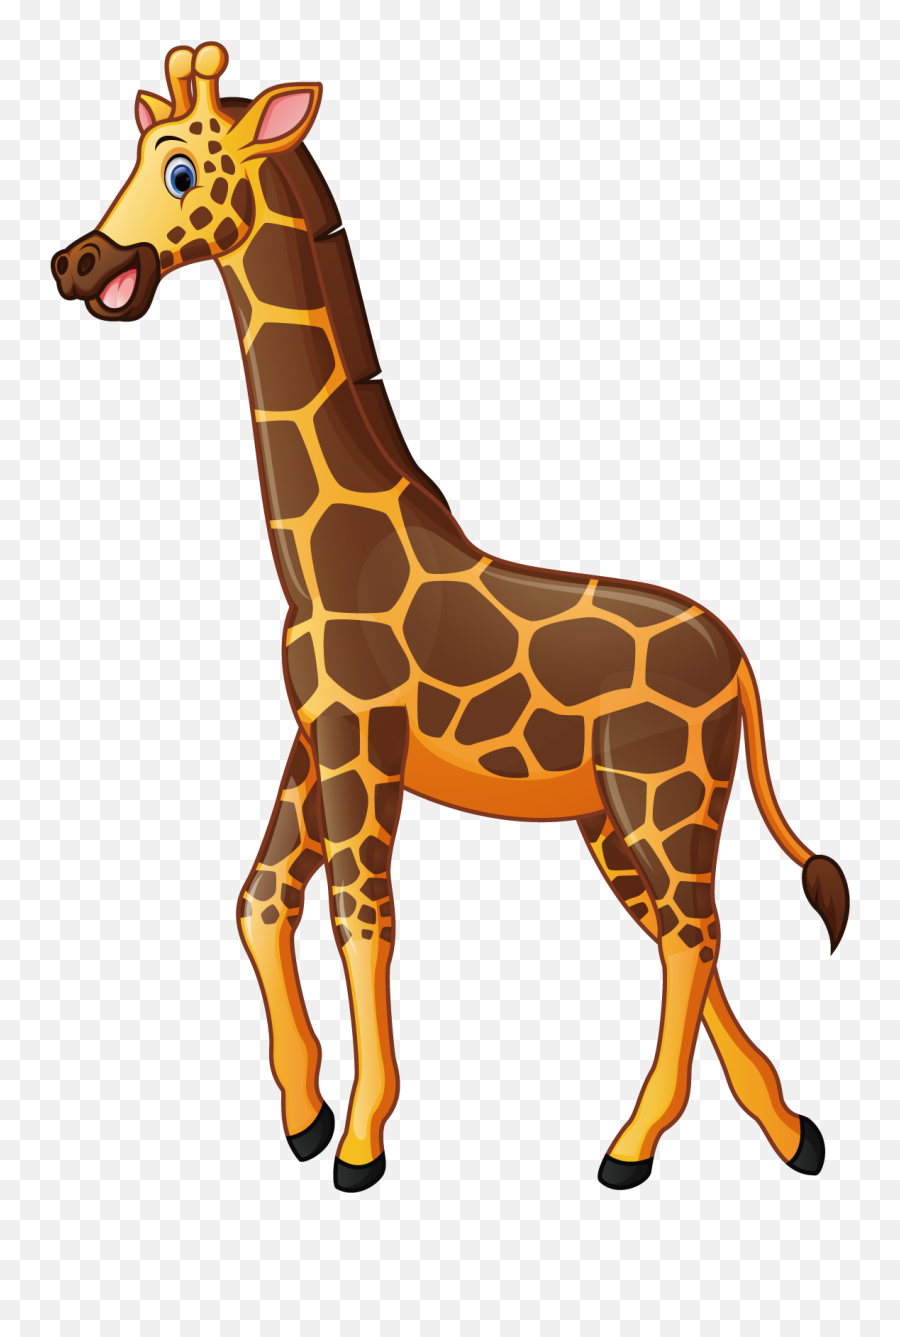 Giraffe Cartoon Illustration - Transparent Background Giraffe Clipart Png,Giraffe Transparent Background